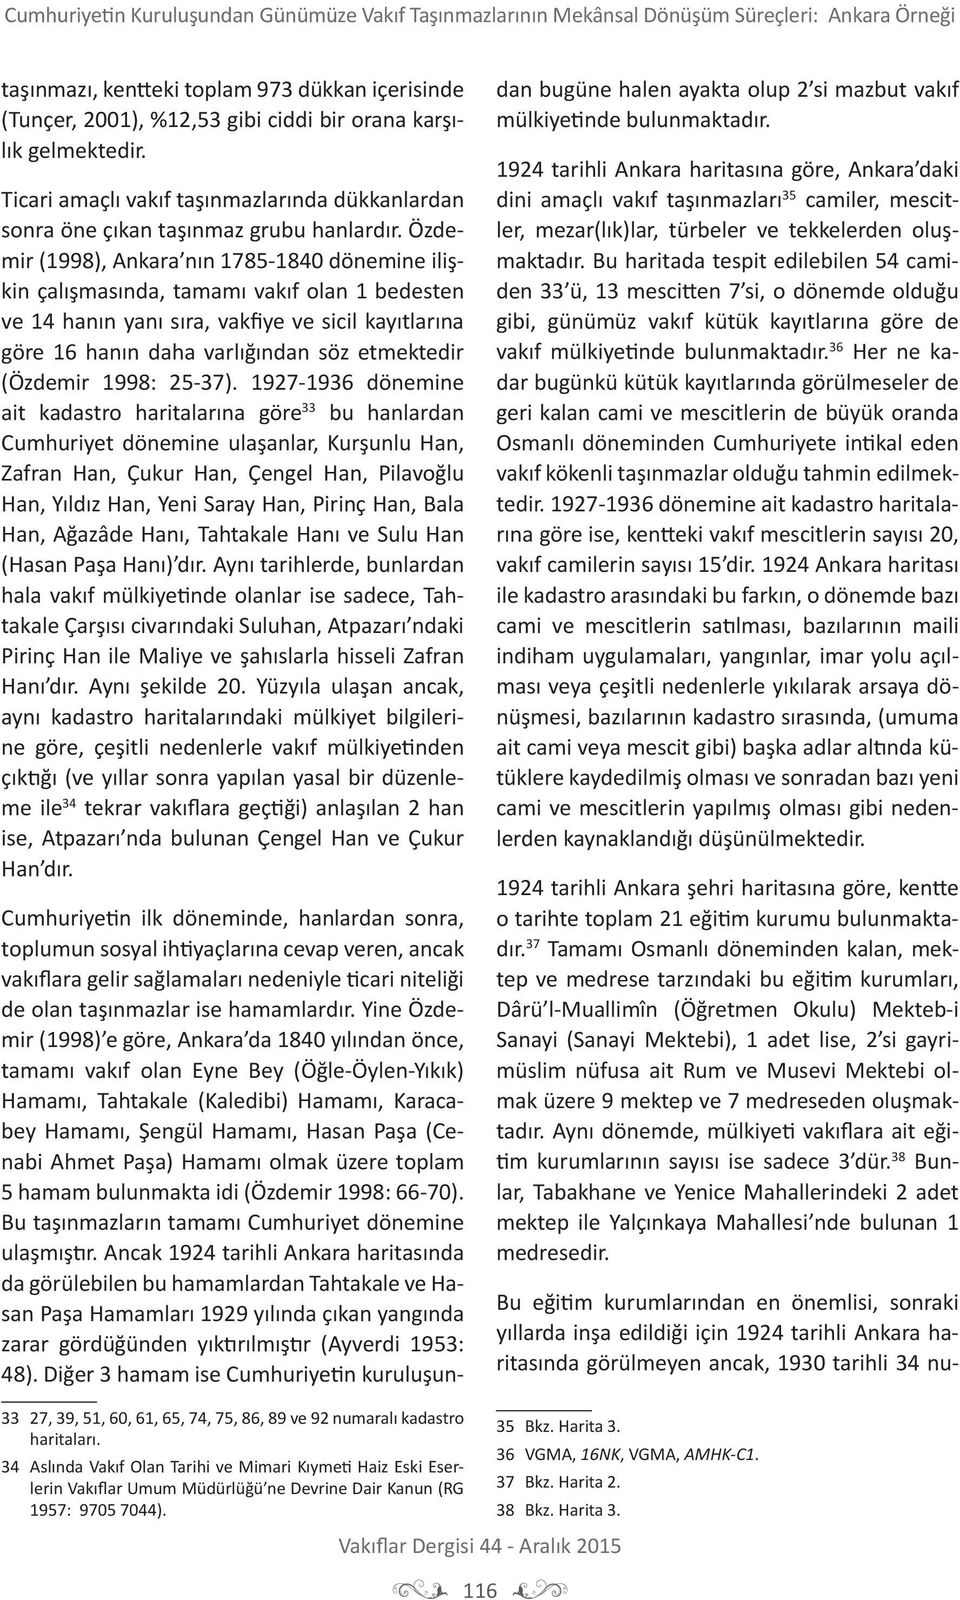 Özdemir (1998), Ankara nın 1785-1840 dönemine ilişkin çalışmasında, tamamı vakıf olan 1 bedesten ve 14 hanın yanı sıra, vakfiye ve sicil kayıtlarına göre 16 hanın daha varlığından söz etmektedir